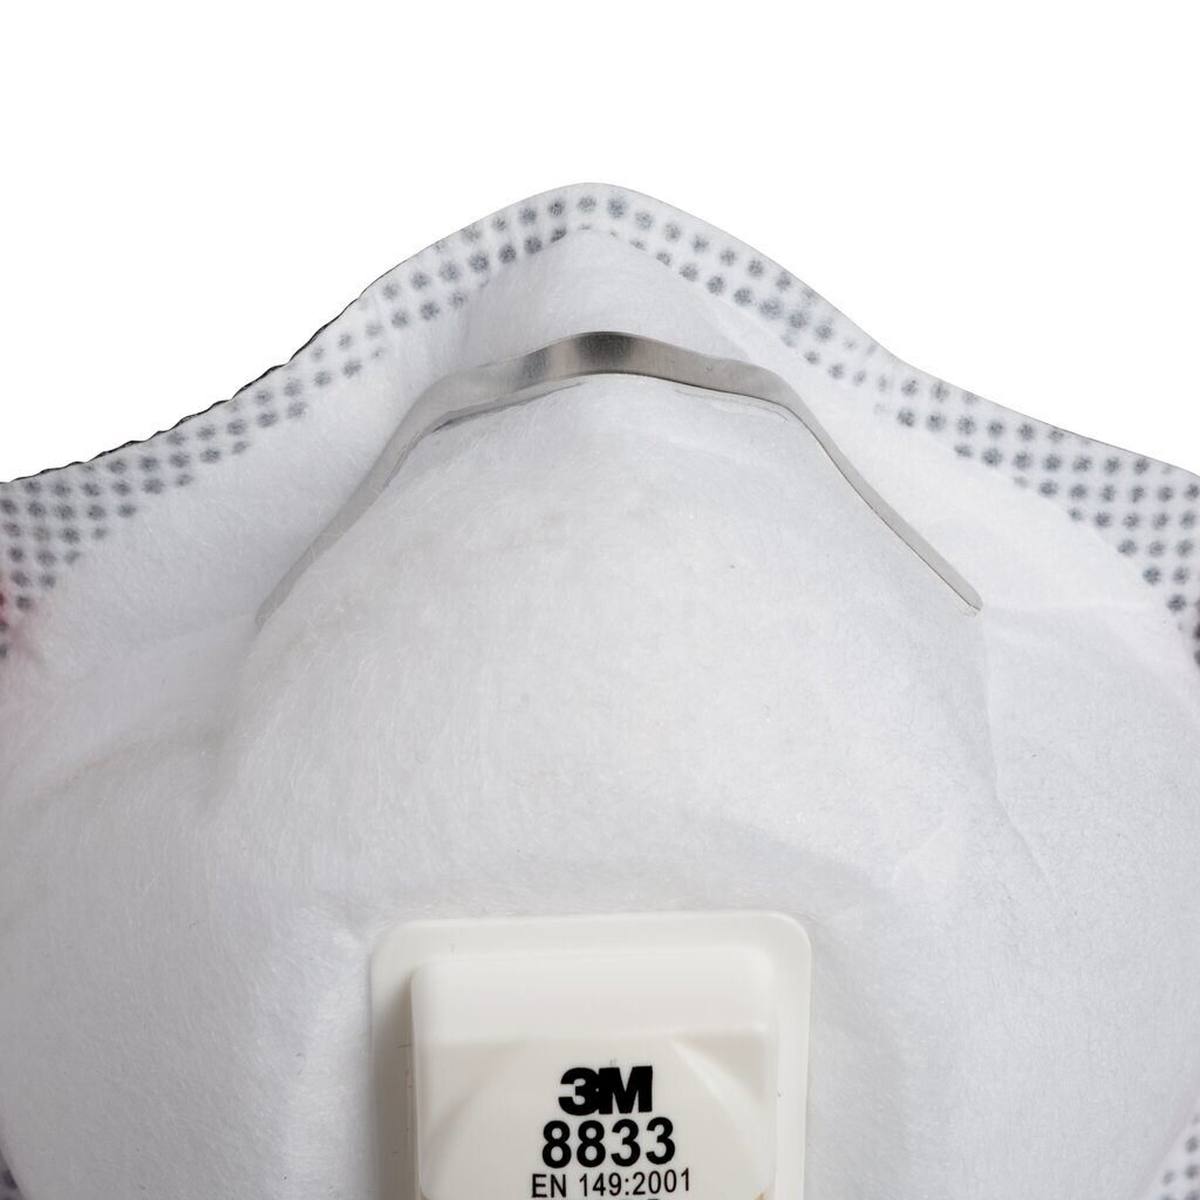 3M 8833 Masque de protection respiratoire FFP3 avec valve d'expiration Cool-Flow, jusqu'à 30 fois la limite d'exposition